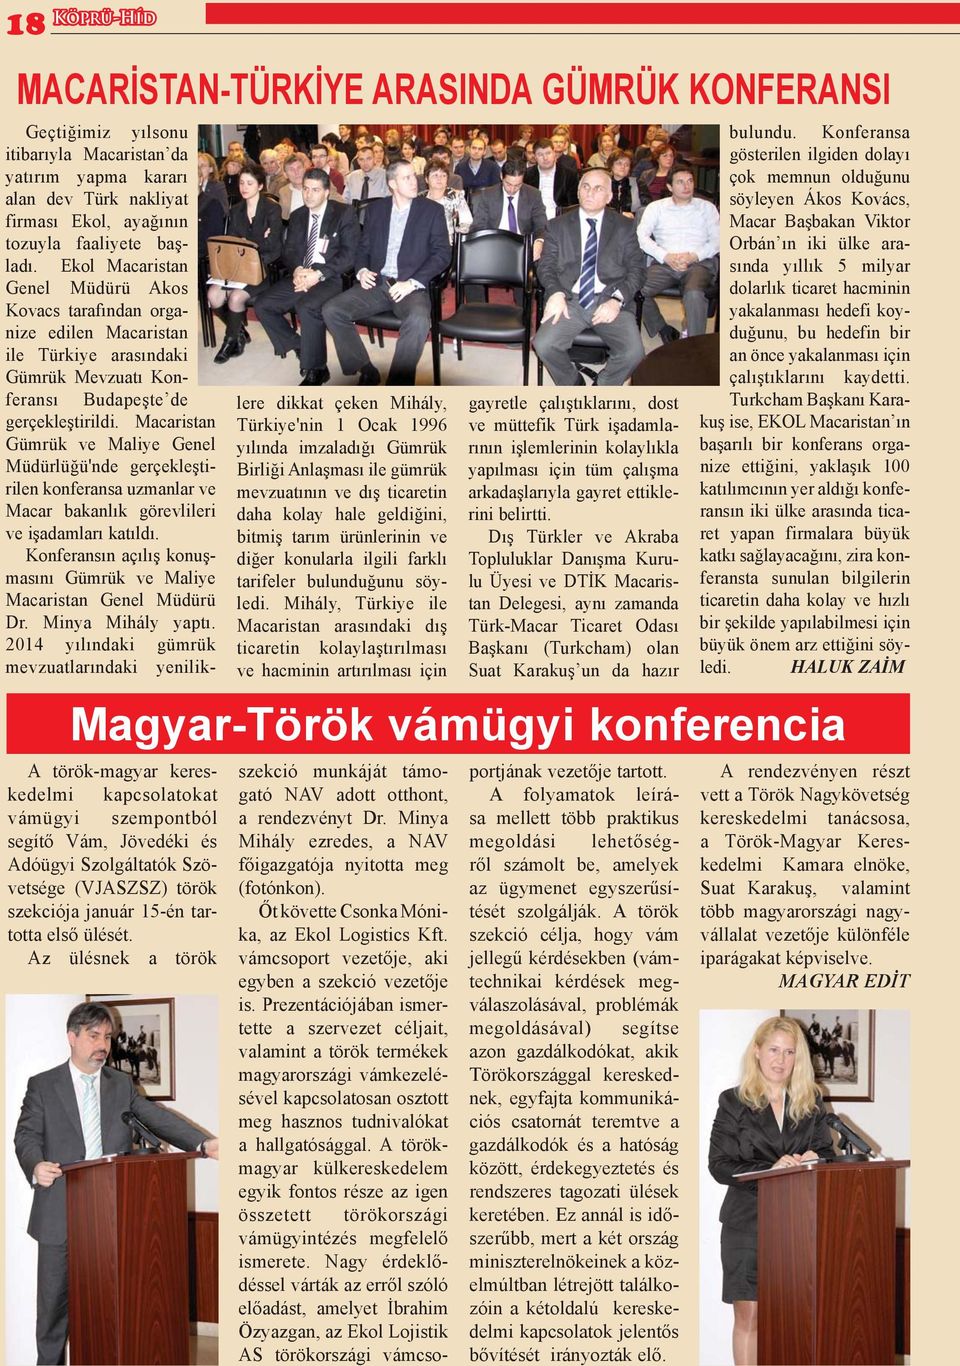 Macaristan Gümrük ve Maliye Genel Müdürlüğü'nde gerçekleştirilen konferansa uzmanlar ve Macar bakanlık görevlileri ve işadamları katıldı.